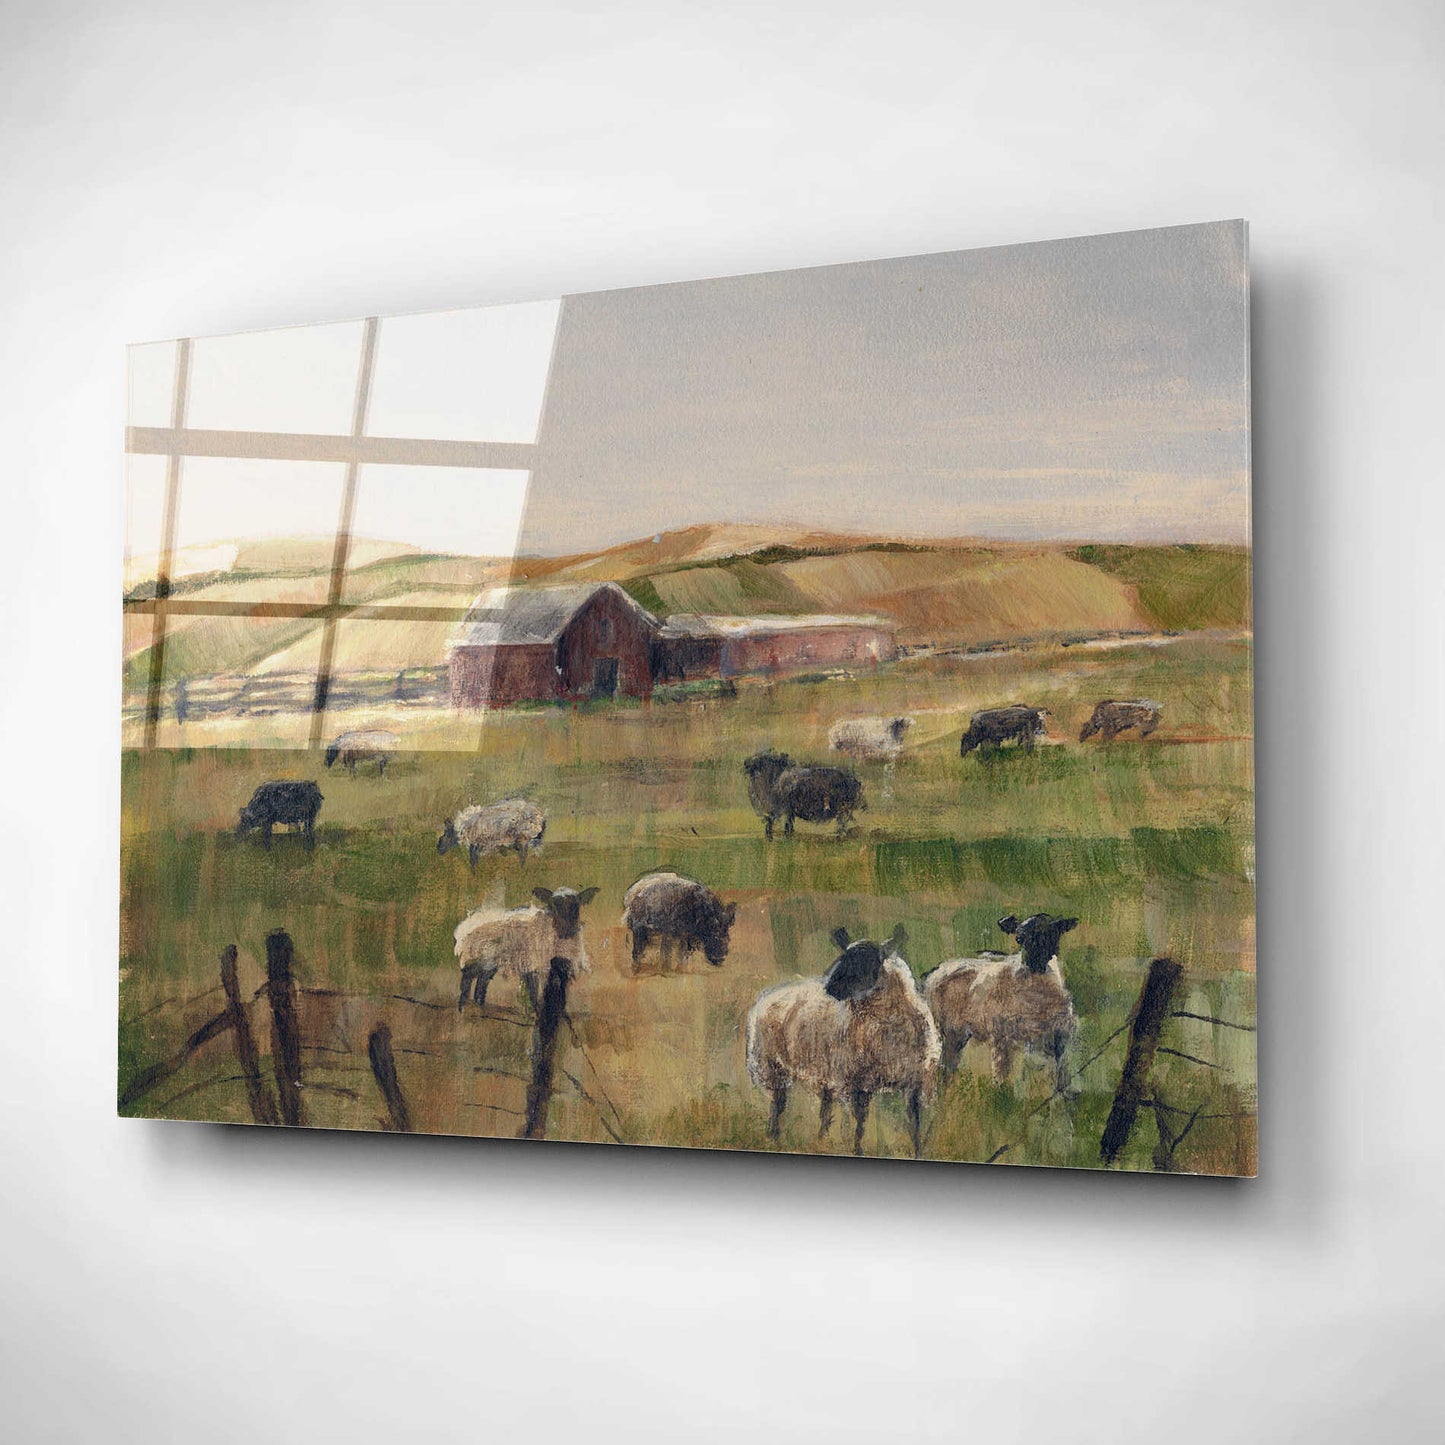 Epic Art "Grazing Sheep II" by Ethan Harper, Acrylic Glass Wall Art,16x12